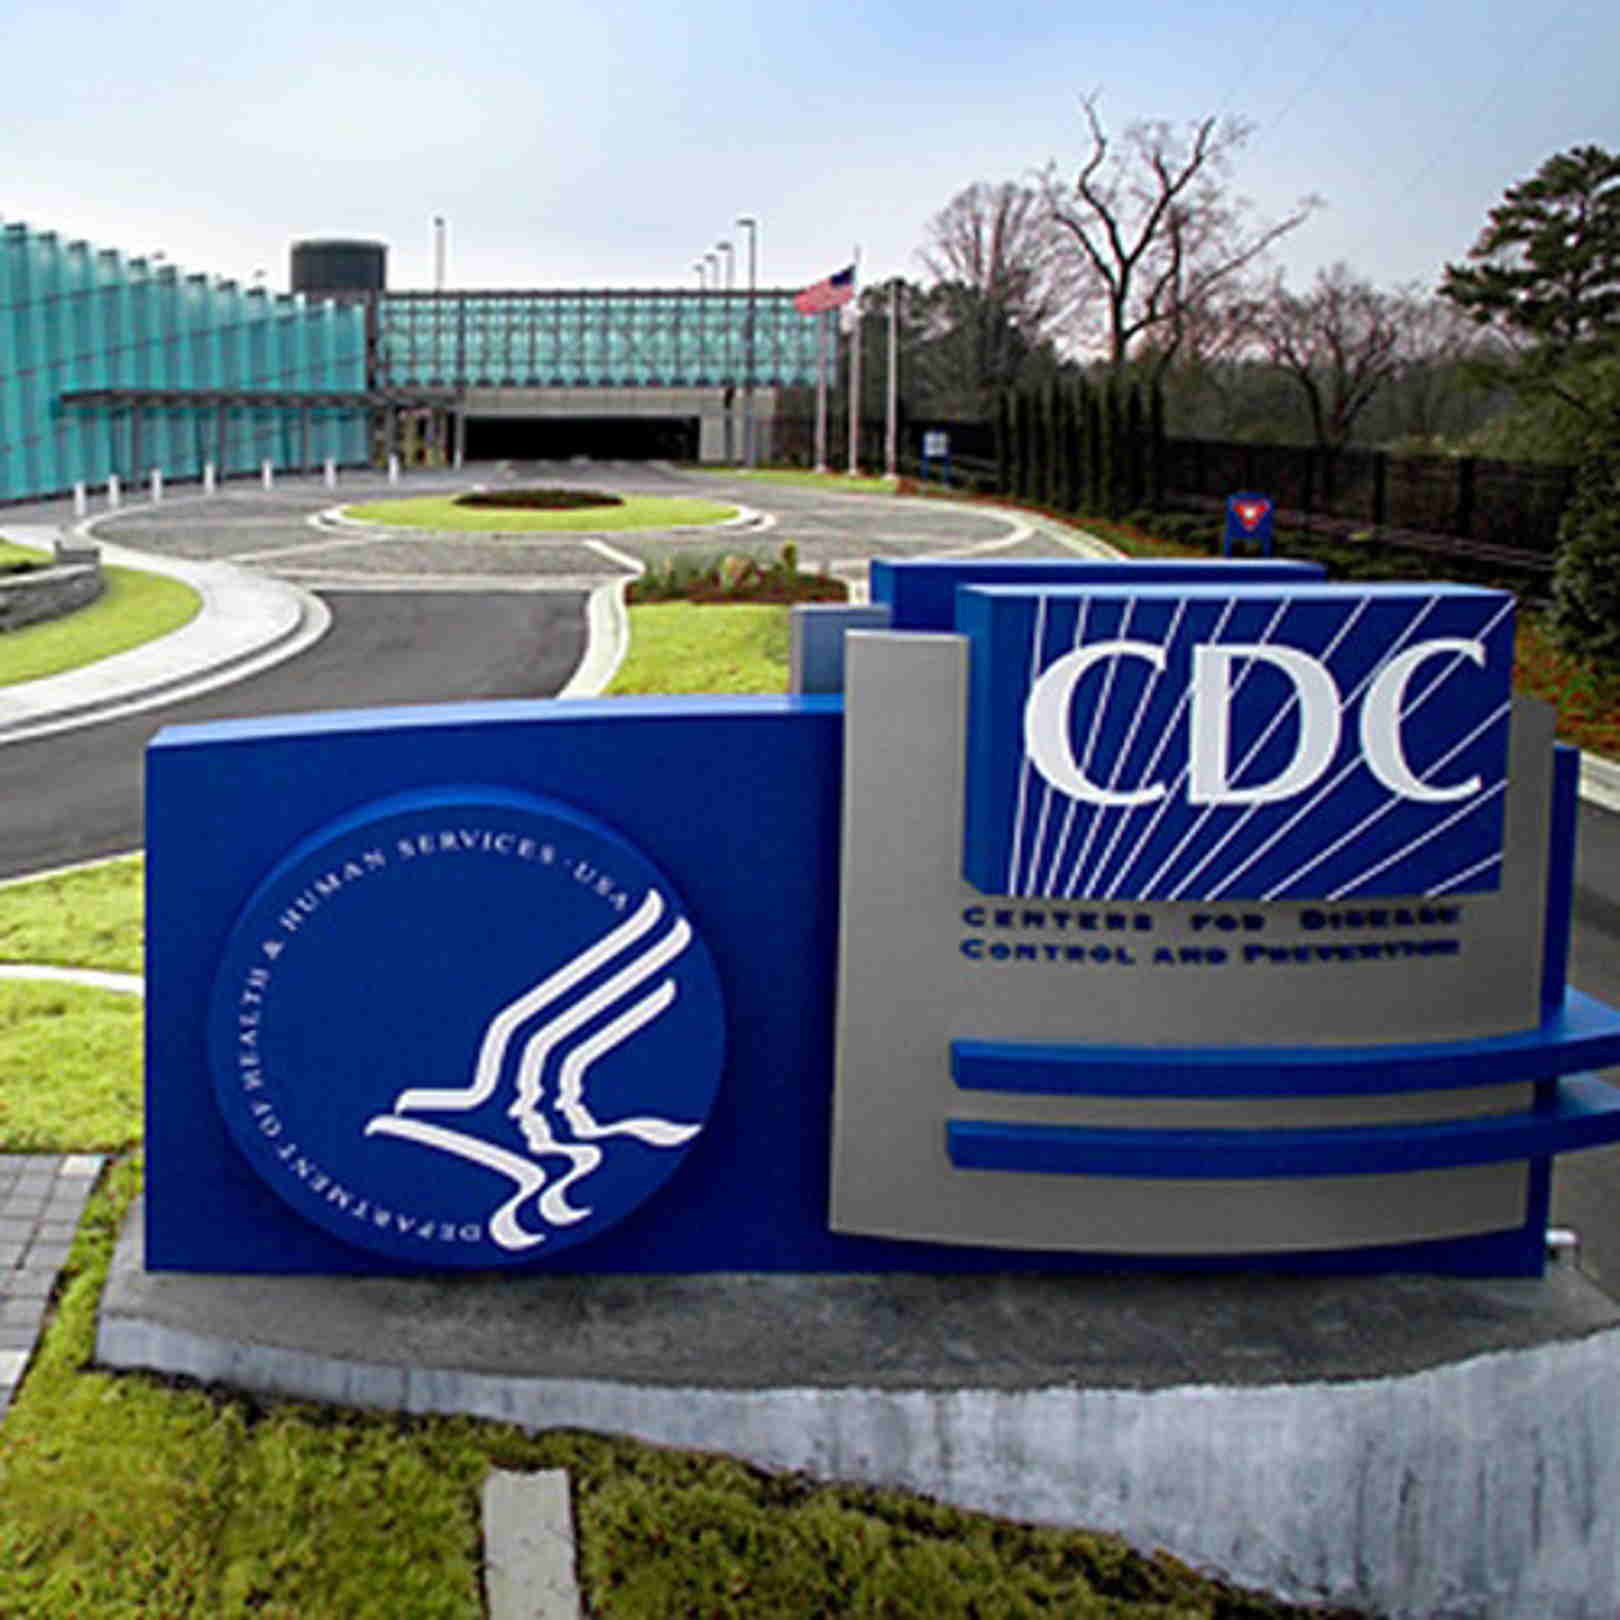 Publicaciones afirman falsamente que un funcionario de los CDC…